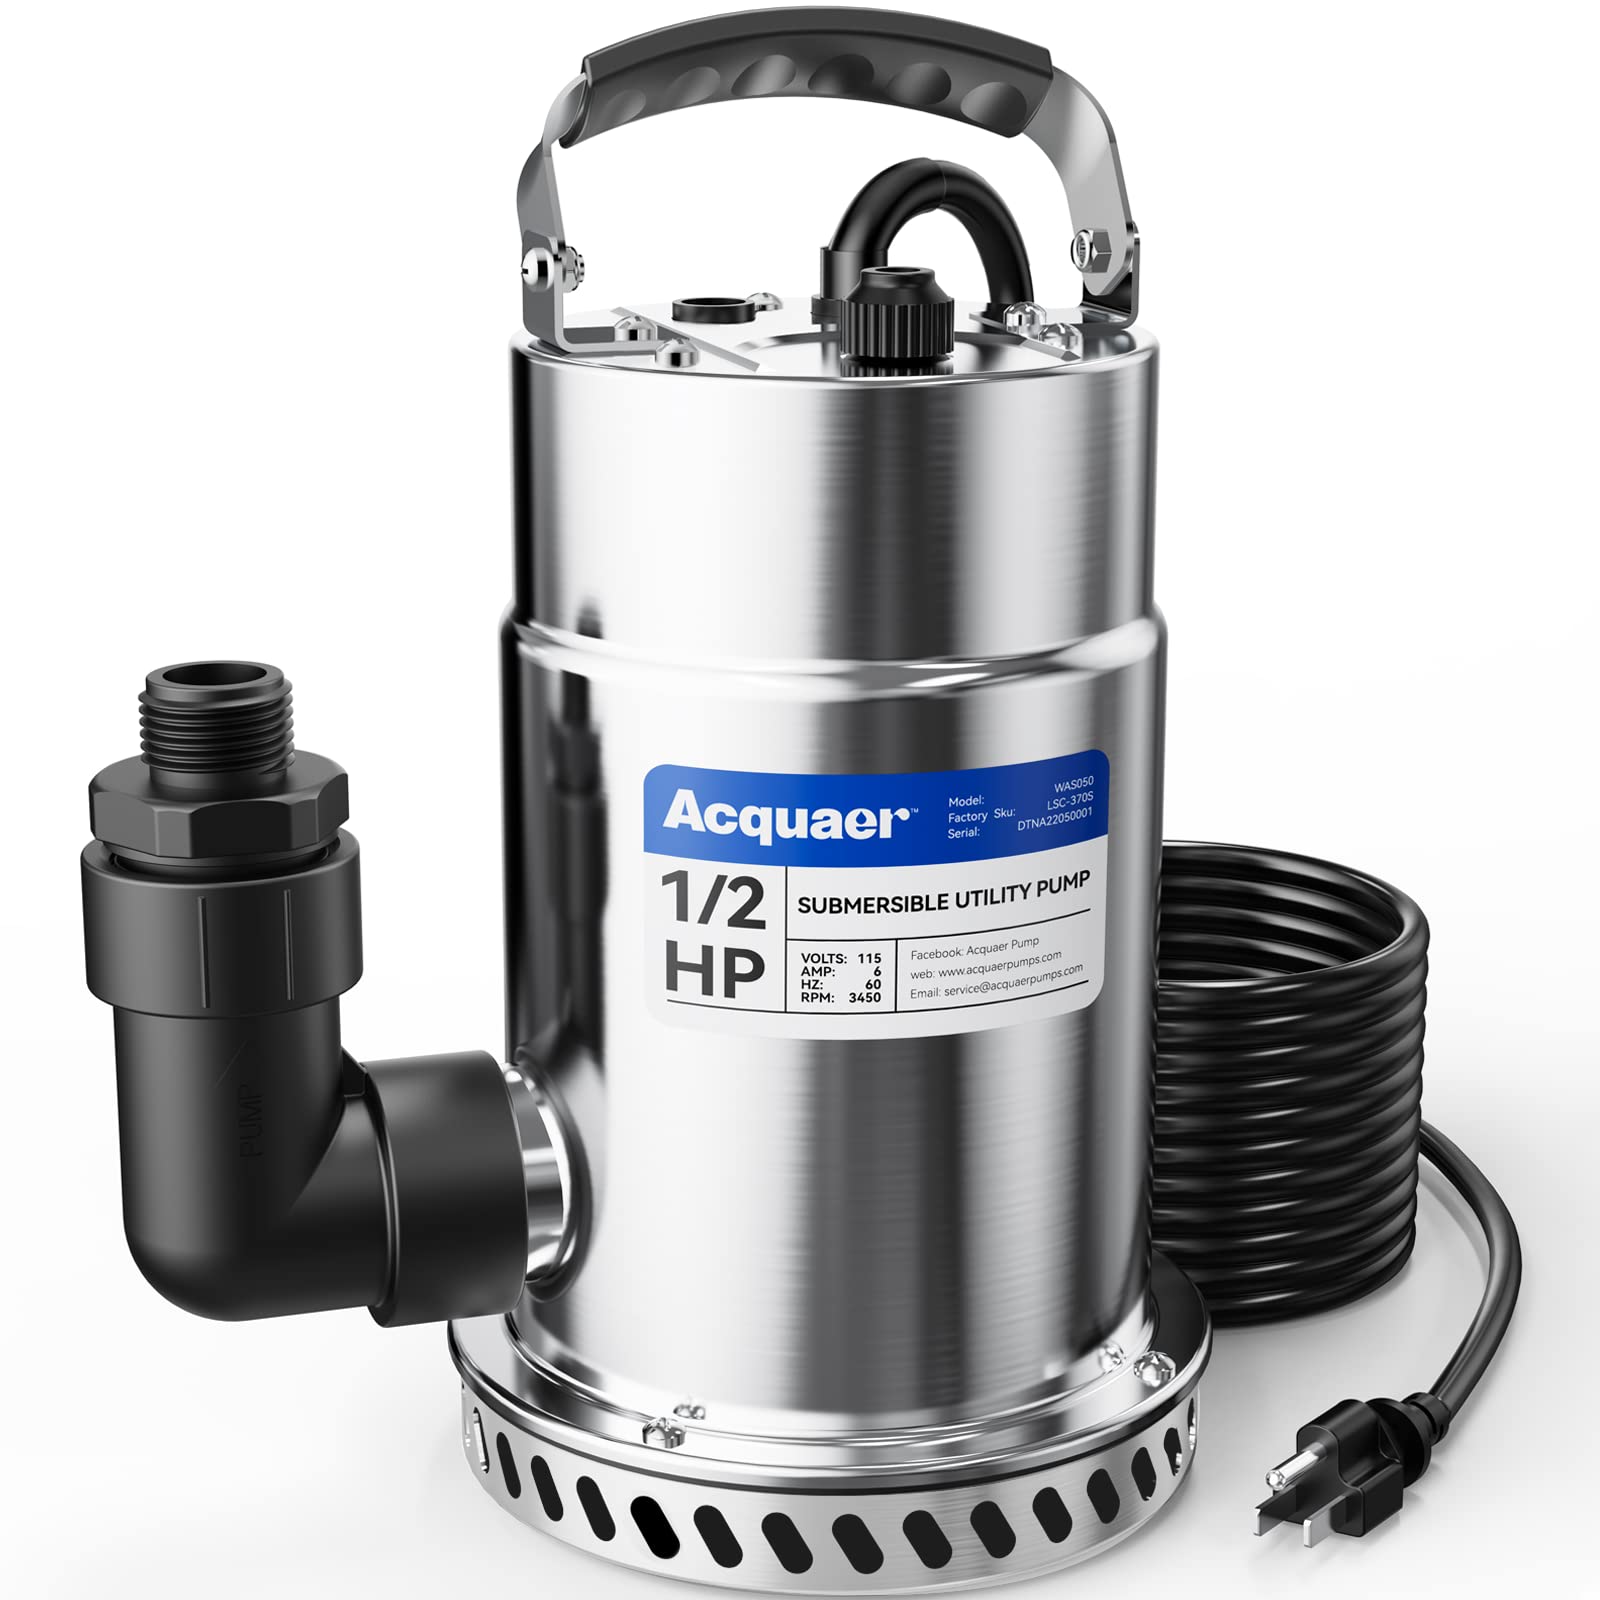 Acquaer 1/2HP Submersible Utility Pump, 3030 GPH - Acquaer